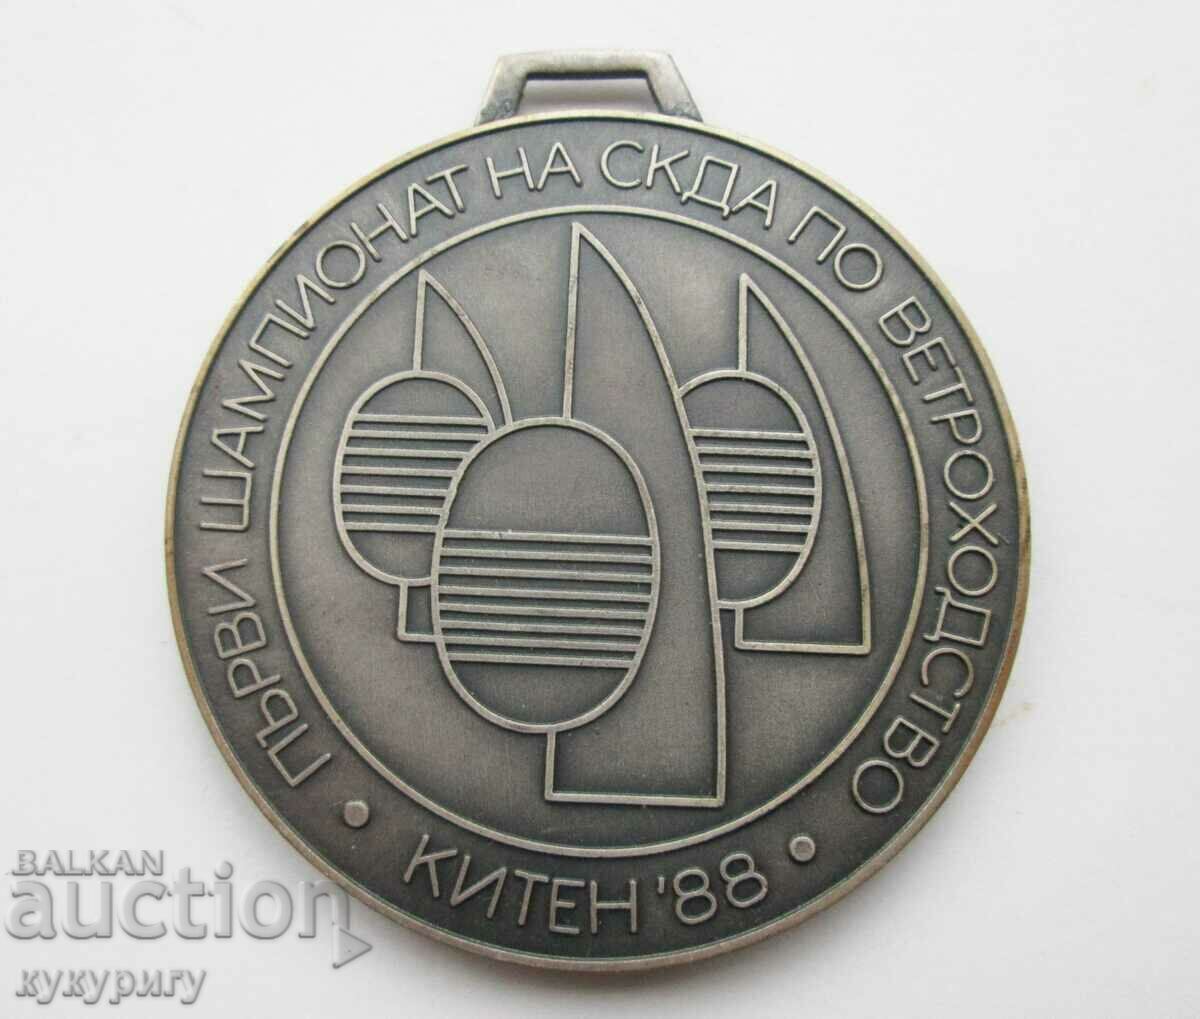 Стар Соц армейски медал шампионат СКДА ветроходство в Китен